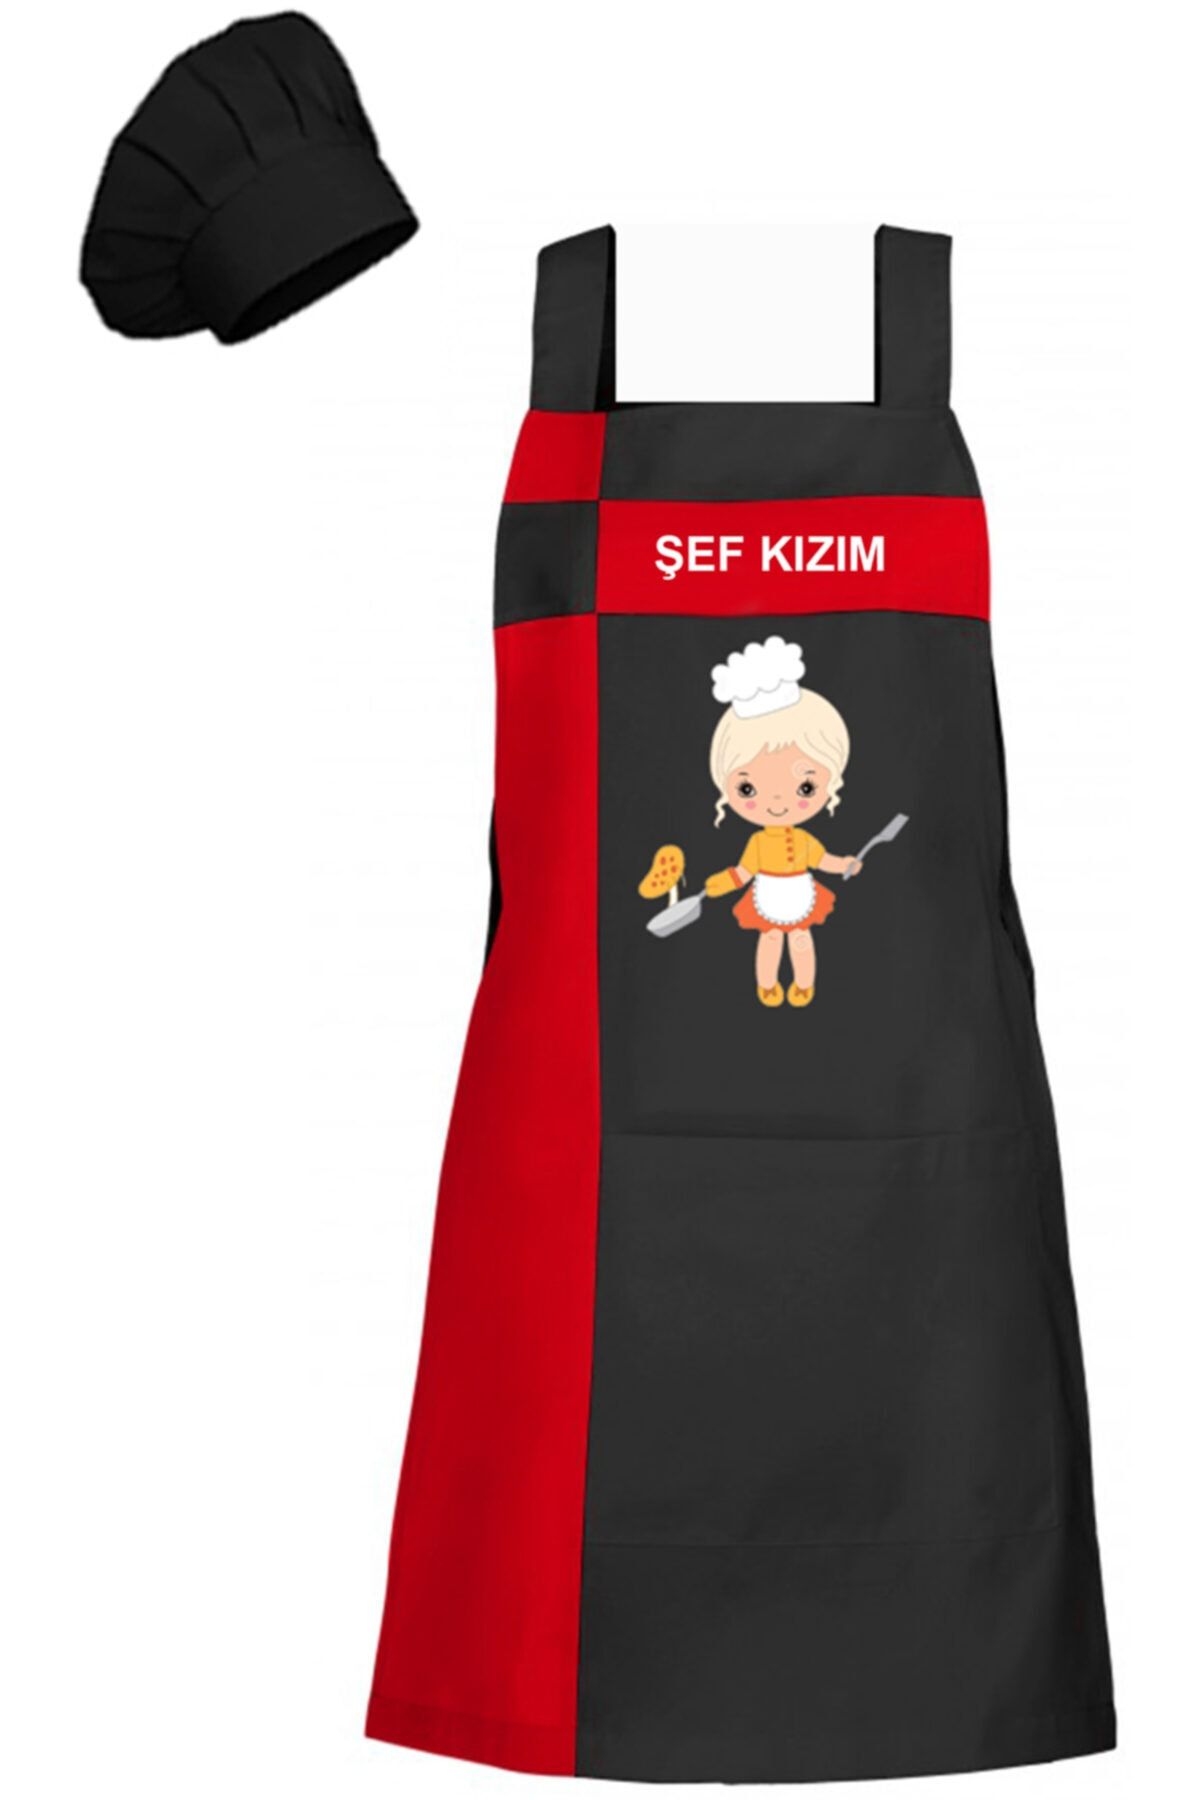 medusaforma Kız Çocuk Aşçı Kıyafeti Master Şef Chef Çocuk Mutfak Önlüğü Takım Çocuk Kostümü Askılı Önlük